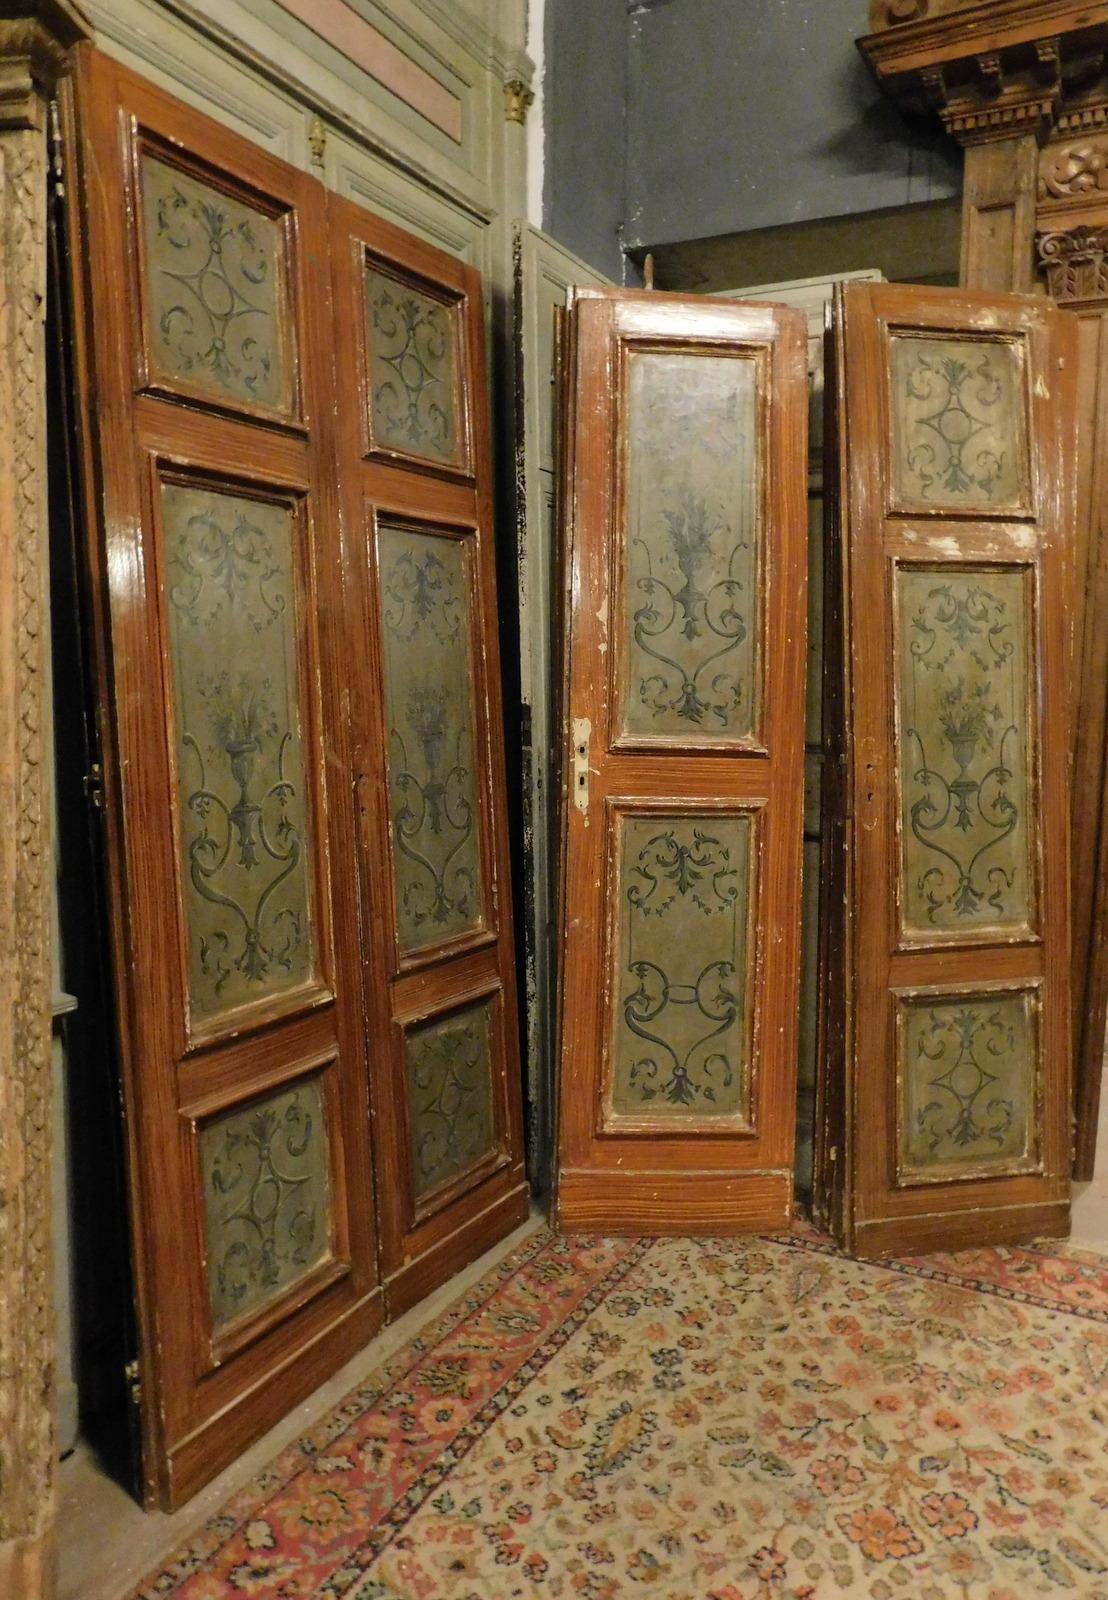 n. 6 portes anciennes à double battant, laquées en bois et peintes d'un motif de l'époque dans des tons bleus, également finies au dos, construites entièrement à la main au XIXe siècle en Italie.
Belle dans l'ensemble, dans le cas où vous voulez